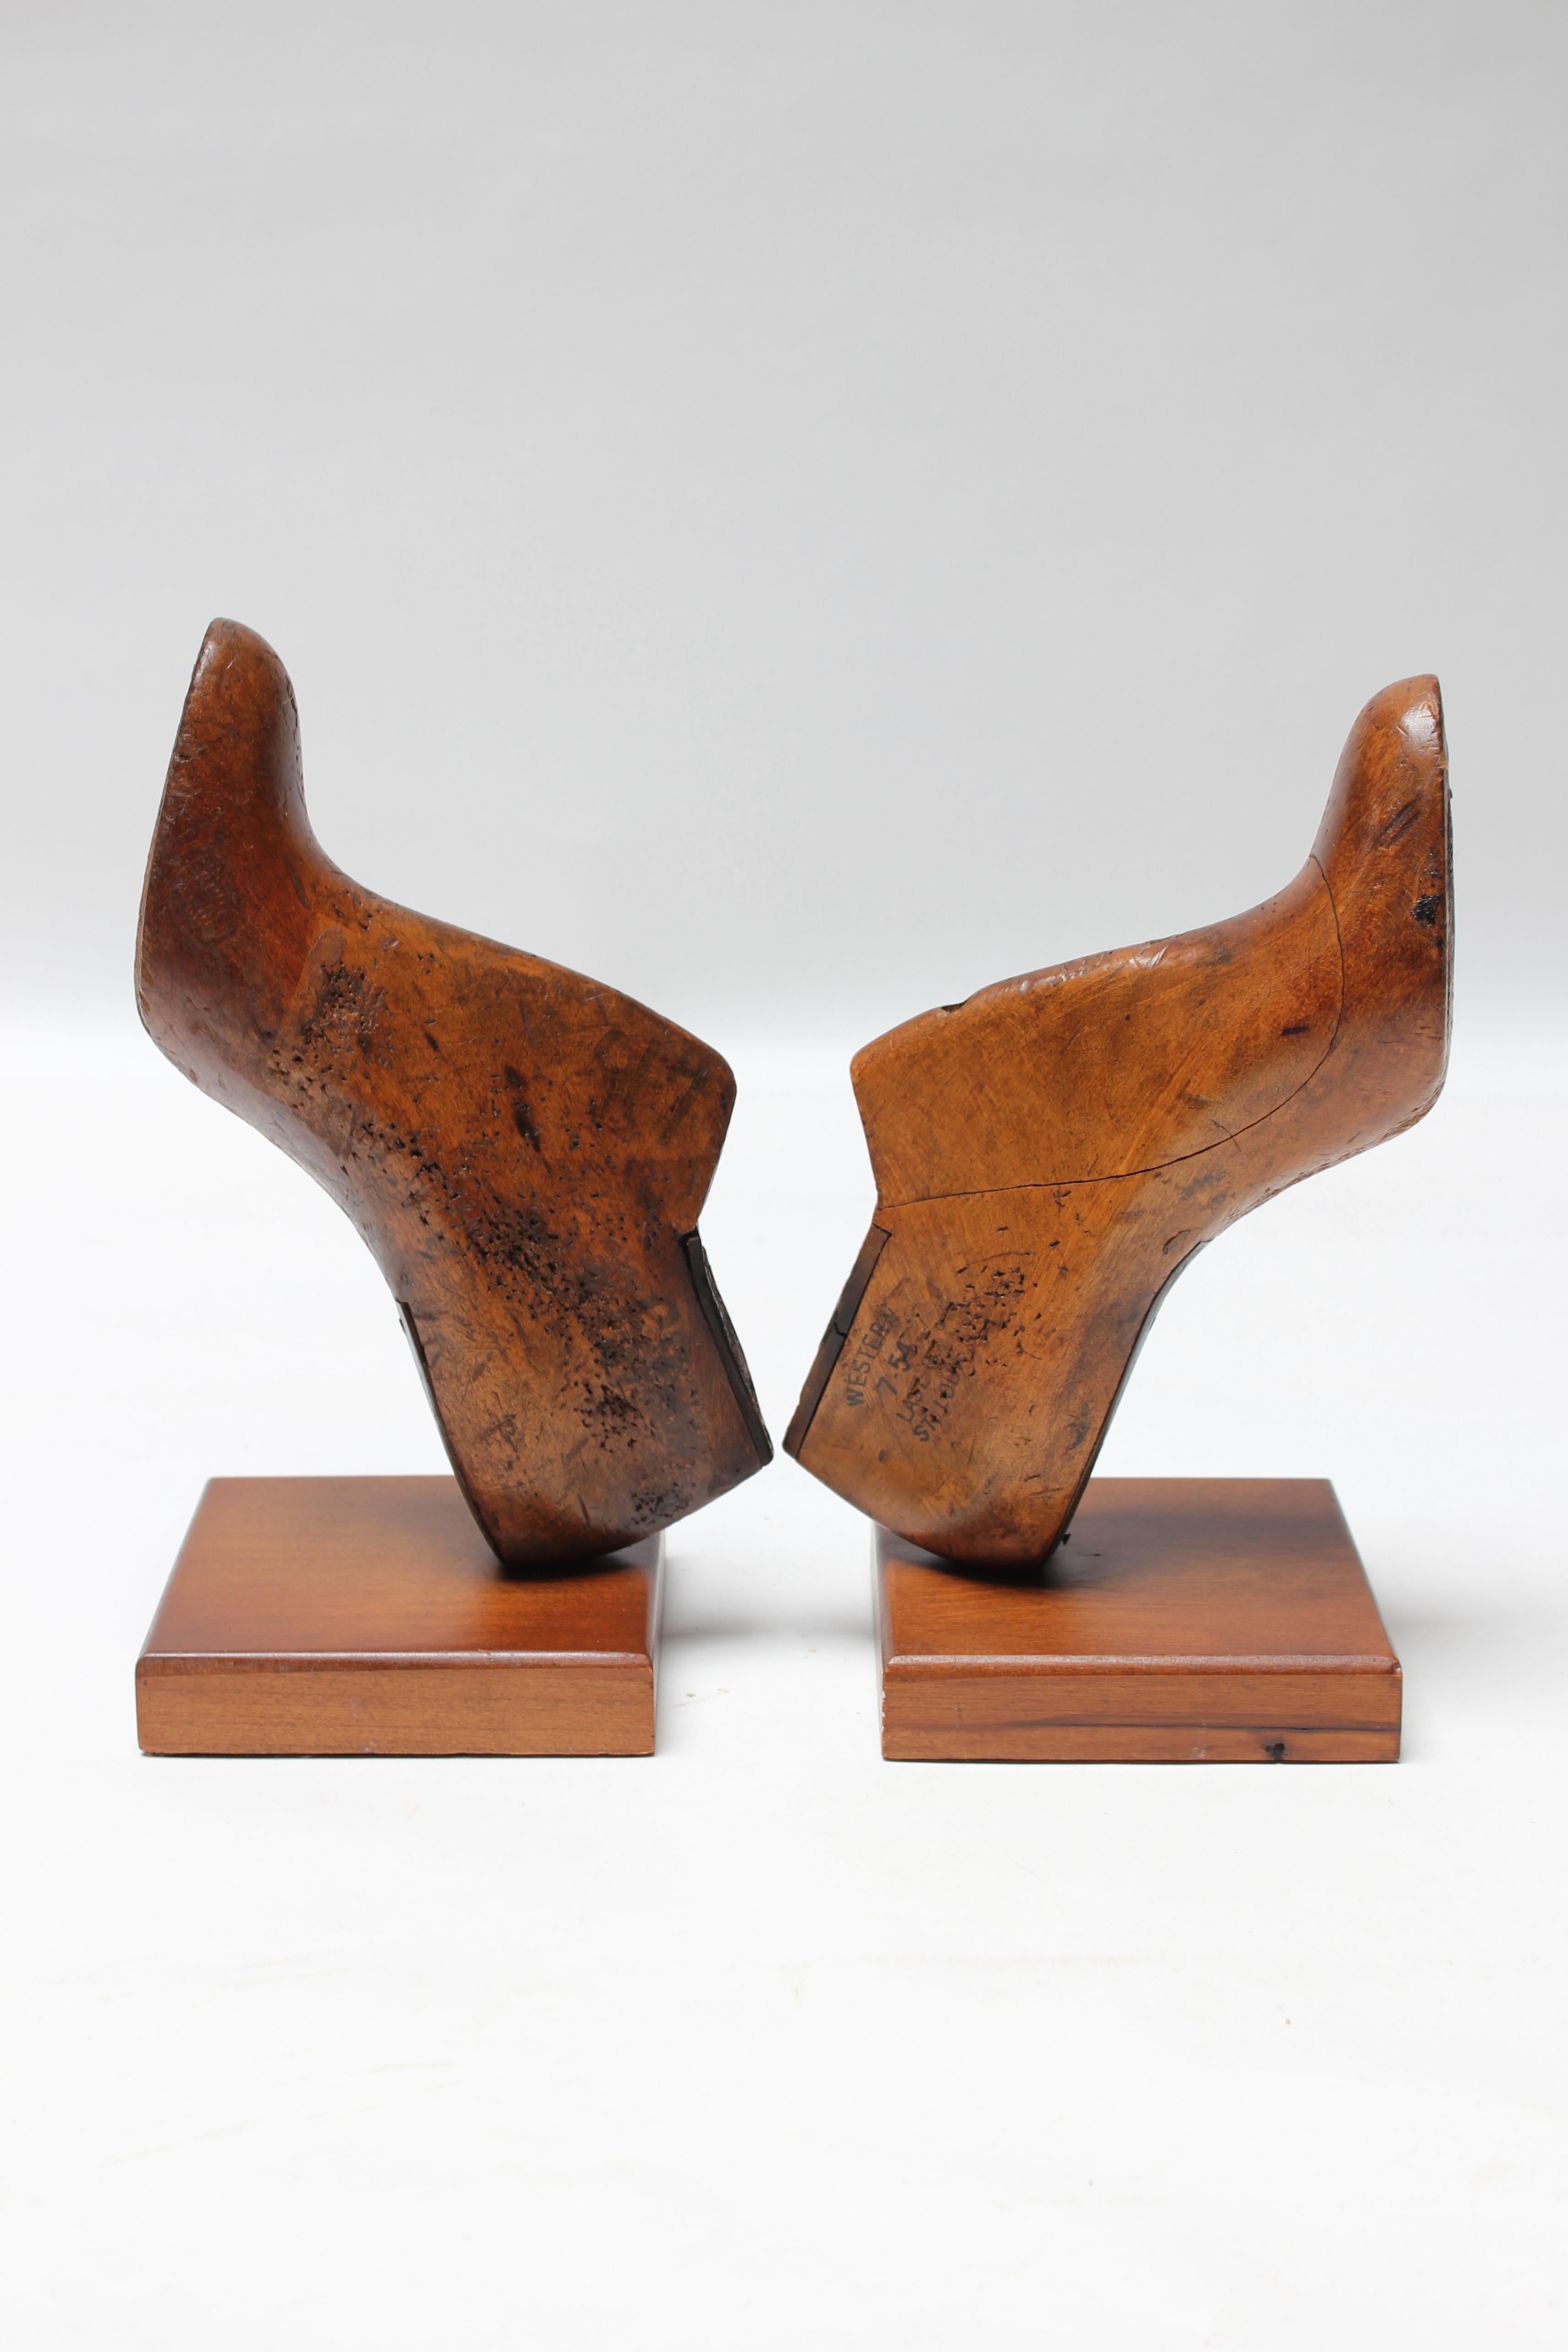 Ein Paar Frauenschuhformen der Größe 6, die zu Buchstützen umfunktioniert wurden (ca. 1930er Jahre, St. Louis, Missouri, USA). Da die Schuhe selbst als Formen für die Herstellung von Schuhen verwendet wurden, sind neben der natürlich gealterten